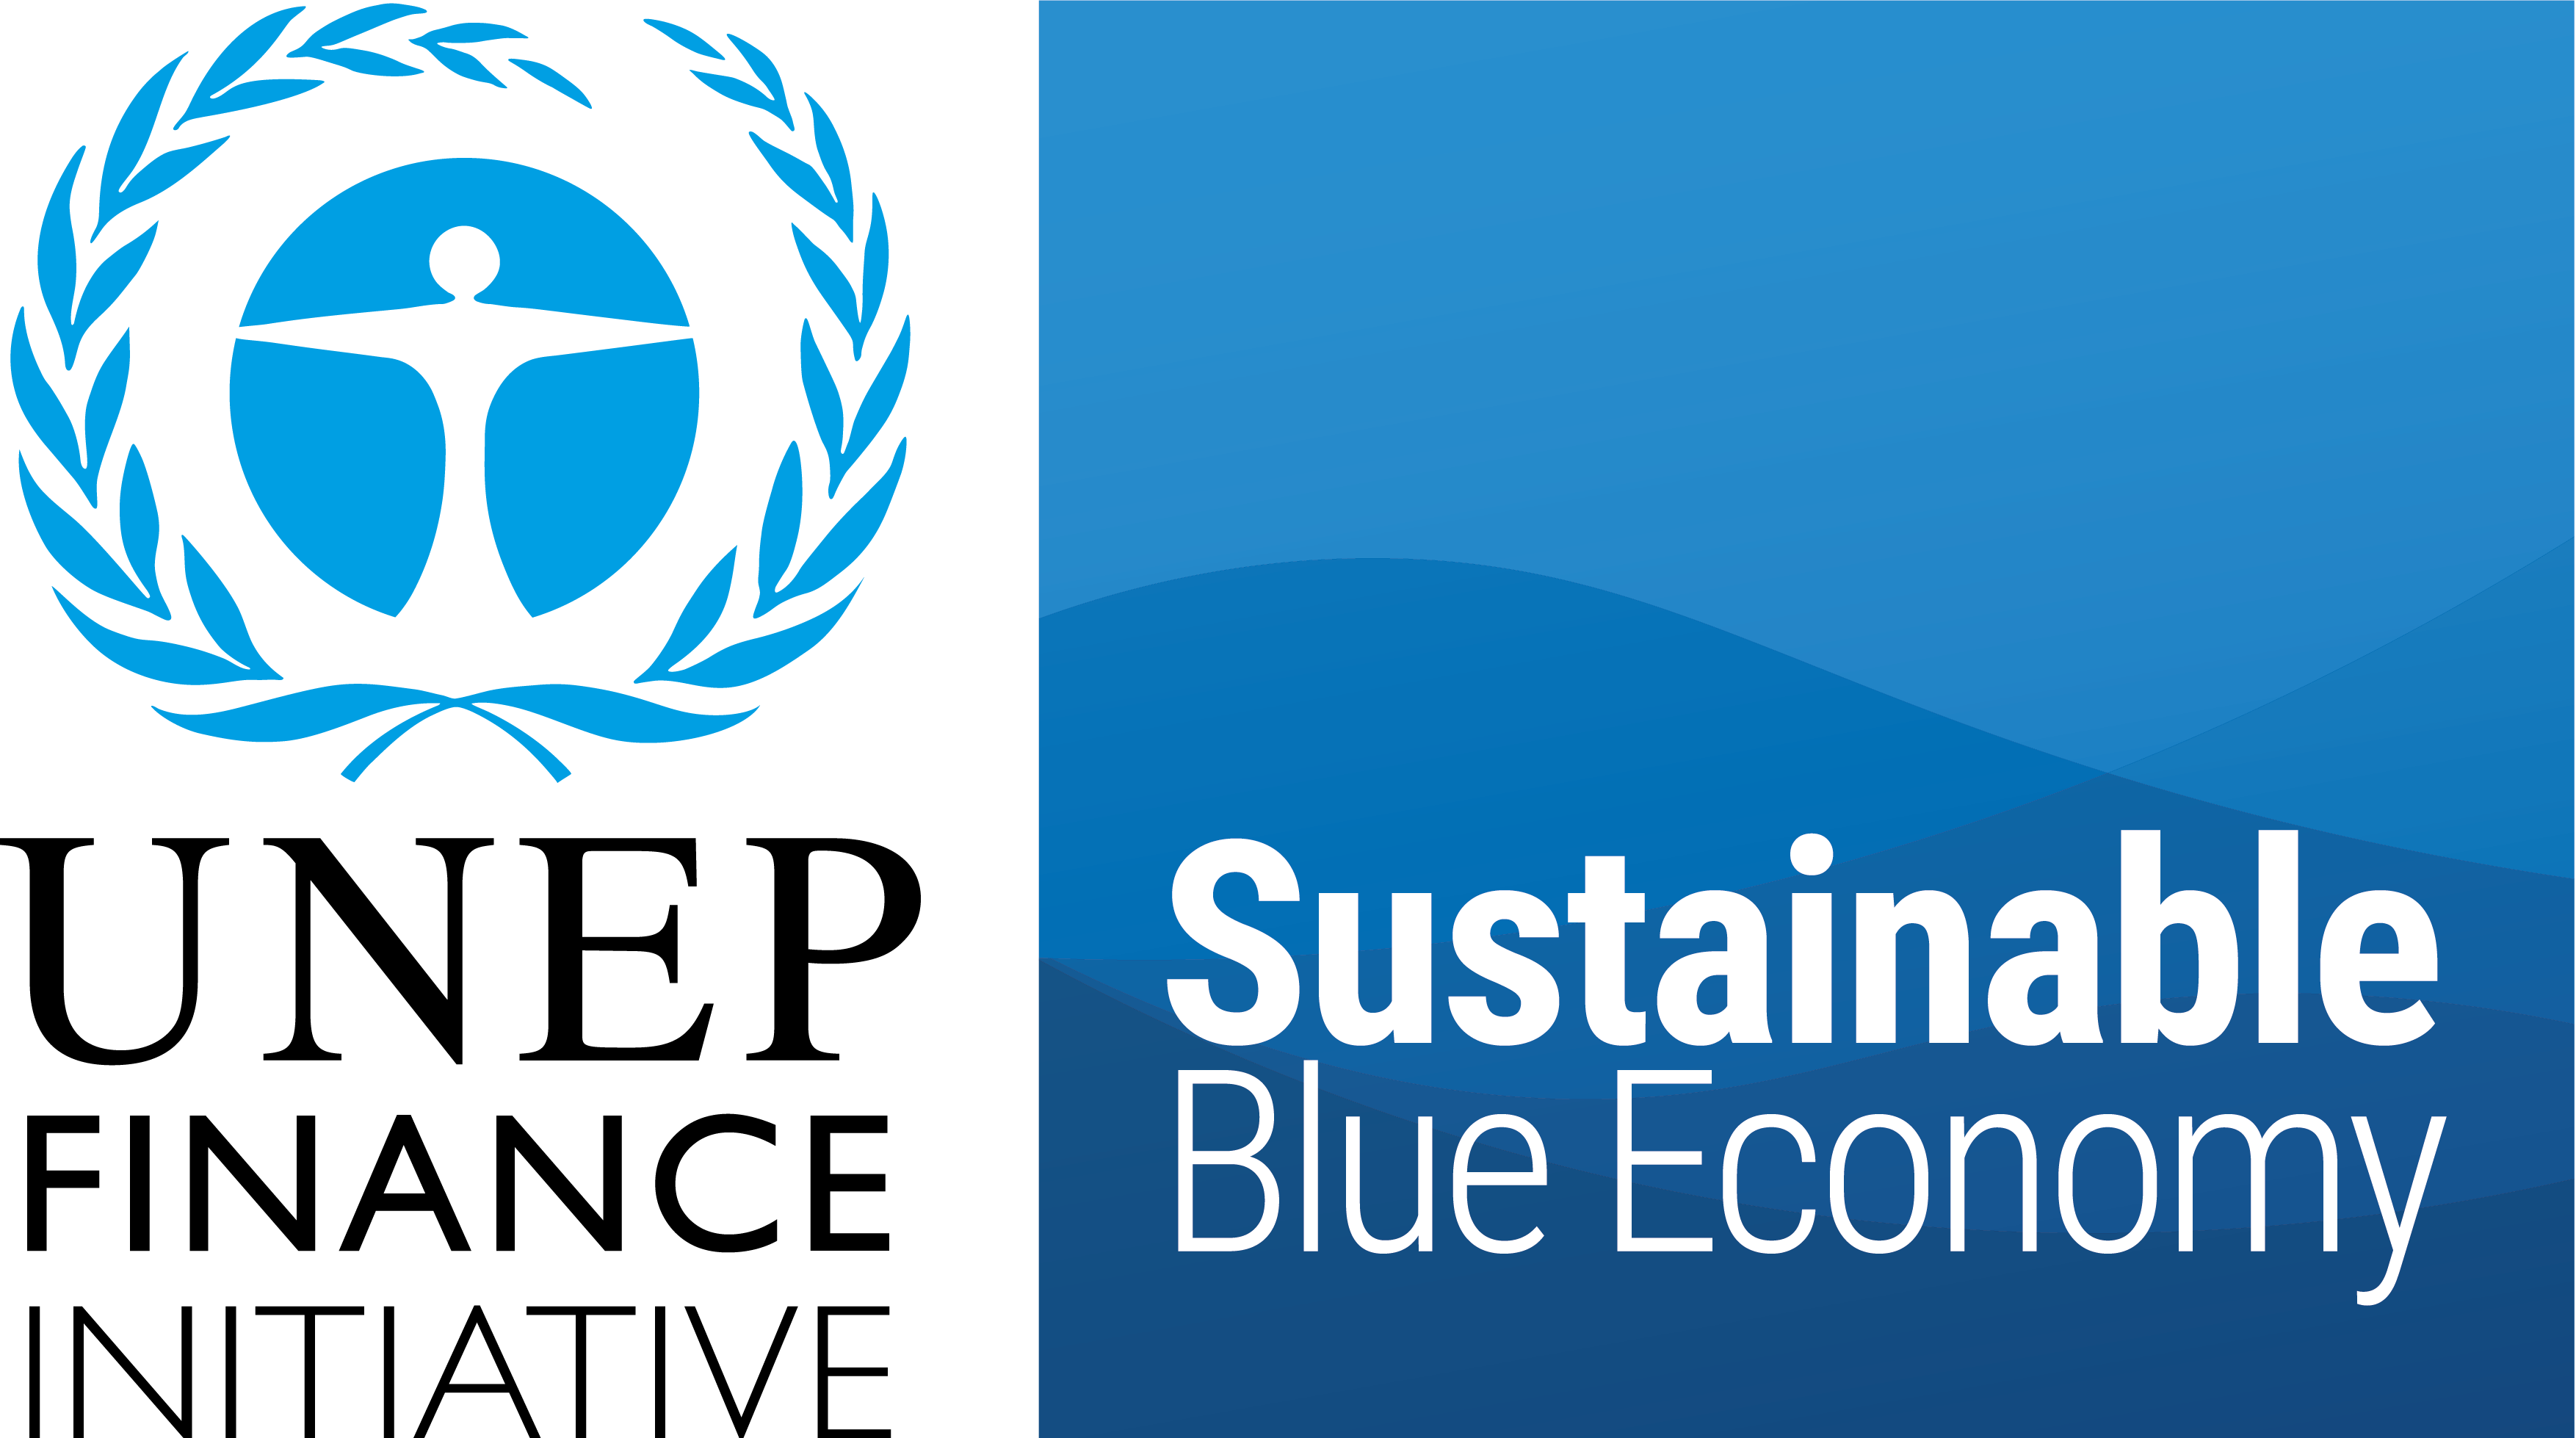 Sustainable Blue Economy Finance Initiative - UNEP FI | World